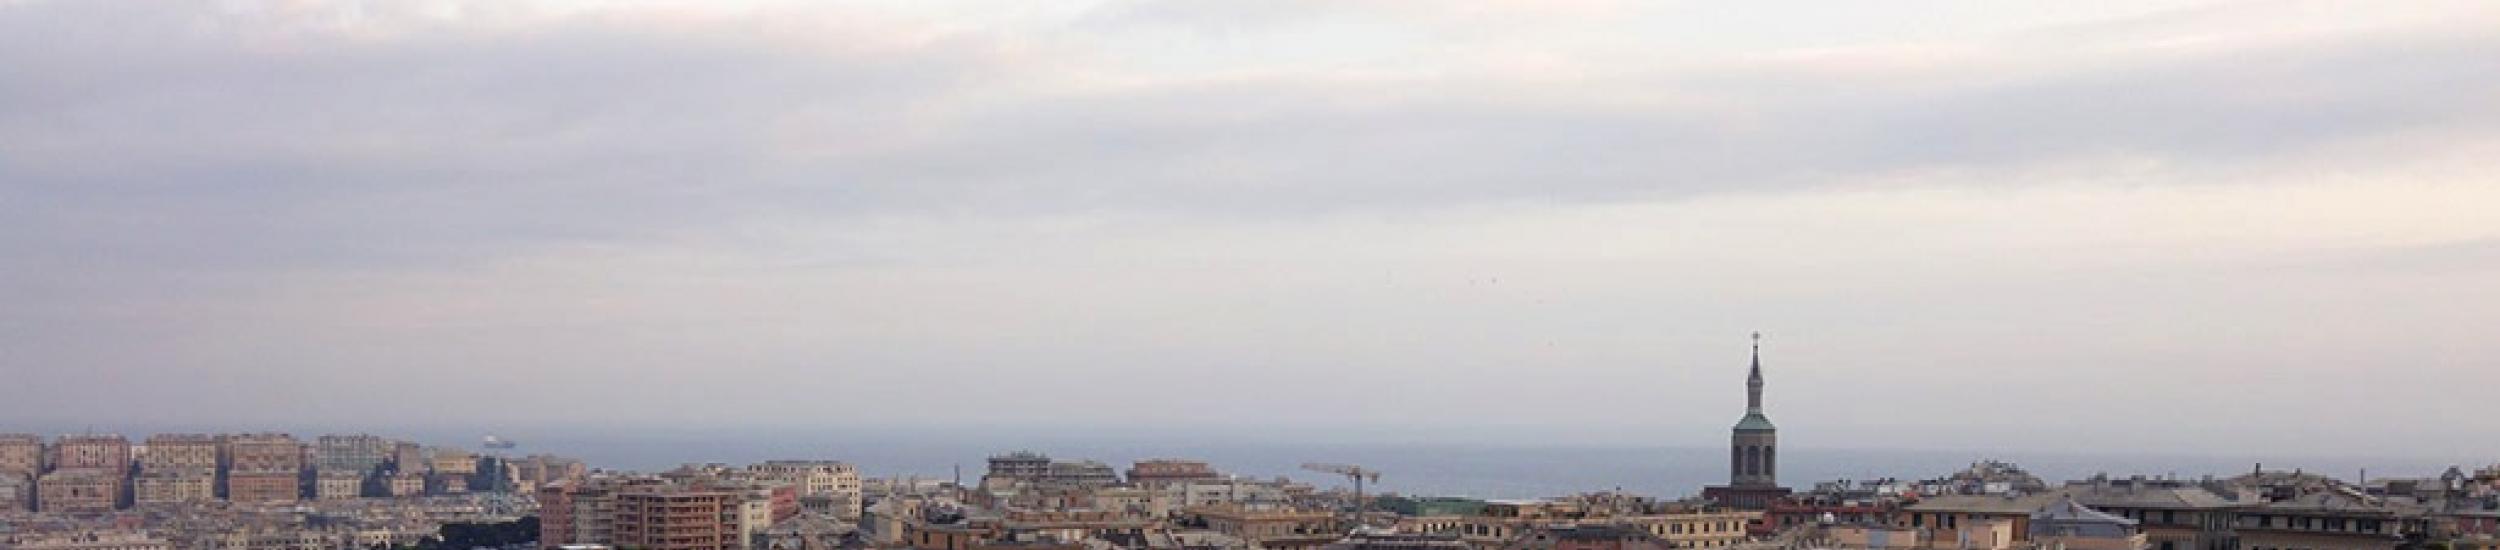 Aria, cielo grigio ma poco smog nella città metropolitana (news del 2015-11-16 08:53:56)